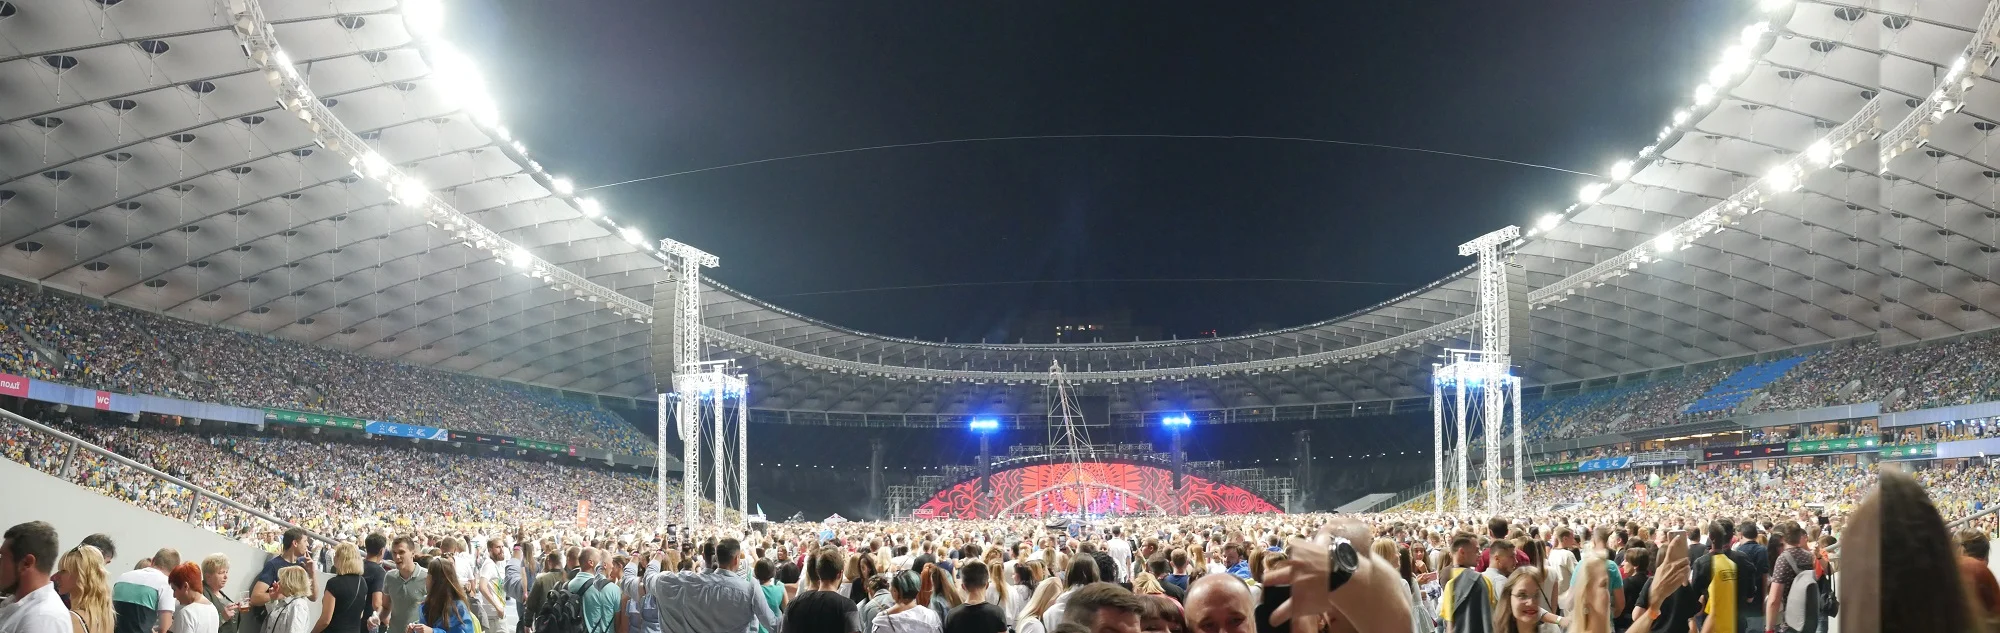 'Океан Ельзи' поздравил Украину зрелищным шоу на самой большой площадке столицы - фото 399405